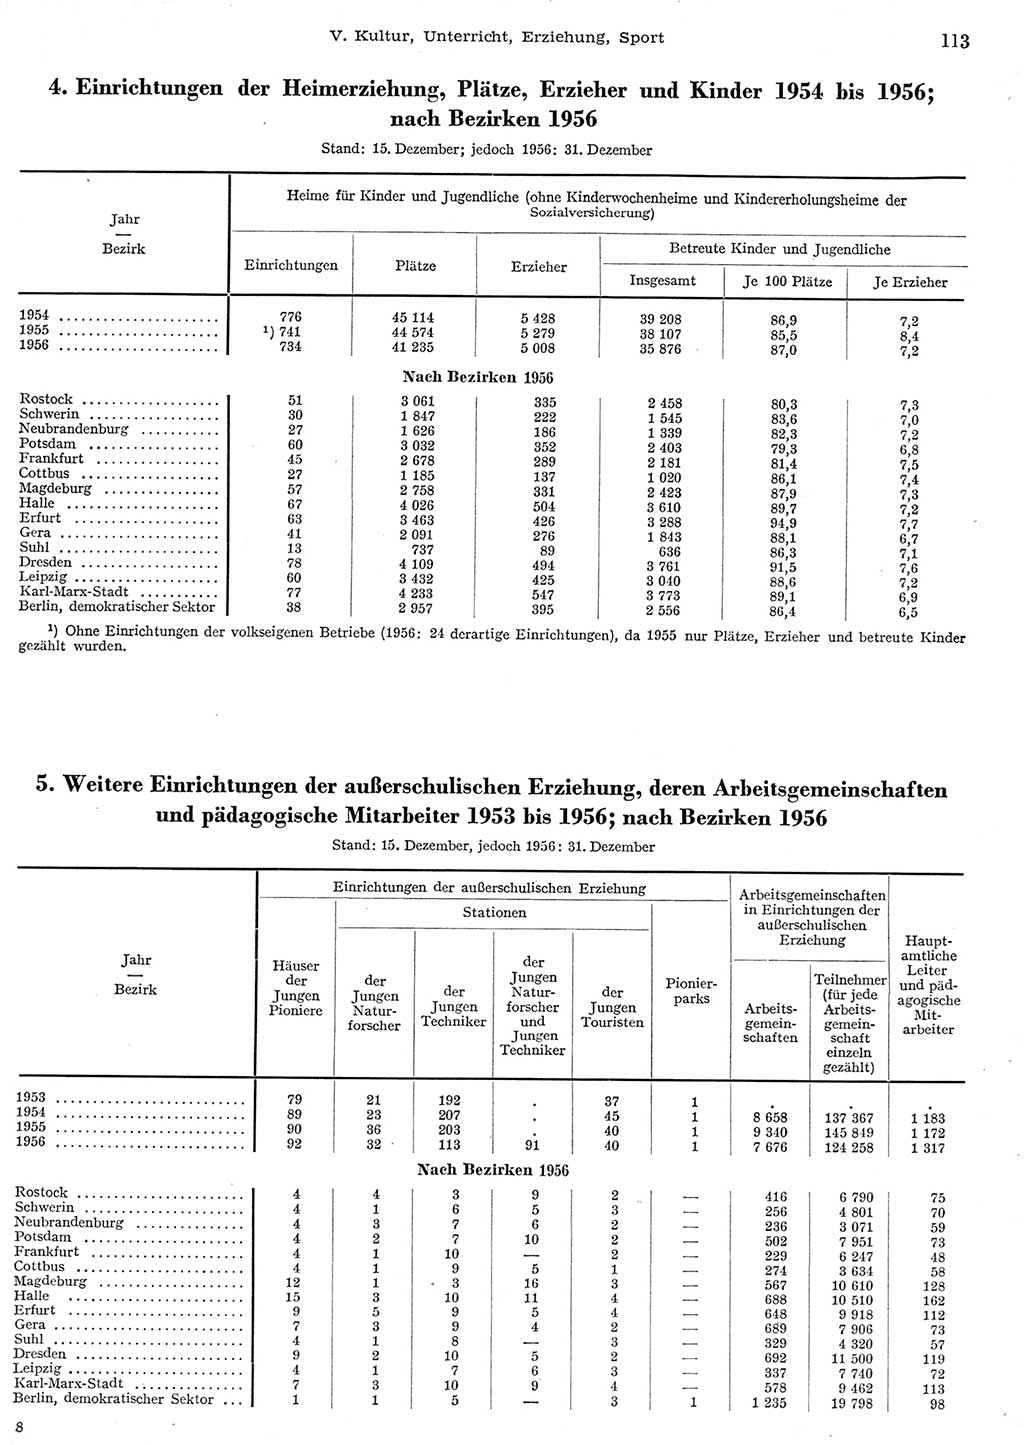 Statistisches Jahrbuch der Deutschen Demokratischen Republik (DDR) 1956, Seite 113 (Stat. Jb. DDR 1956, S. 113)